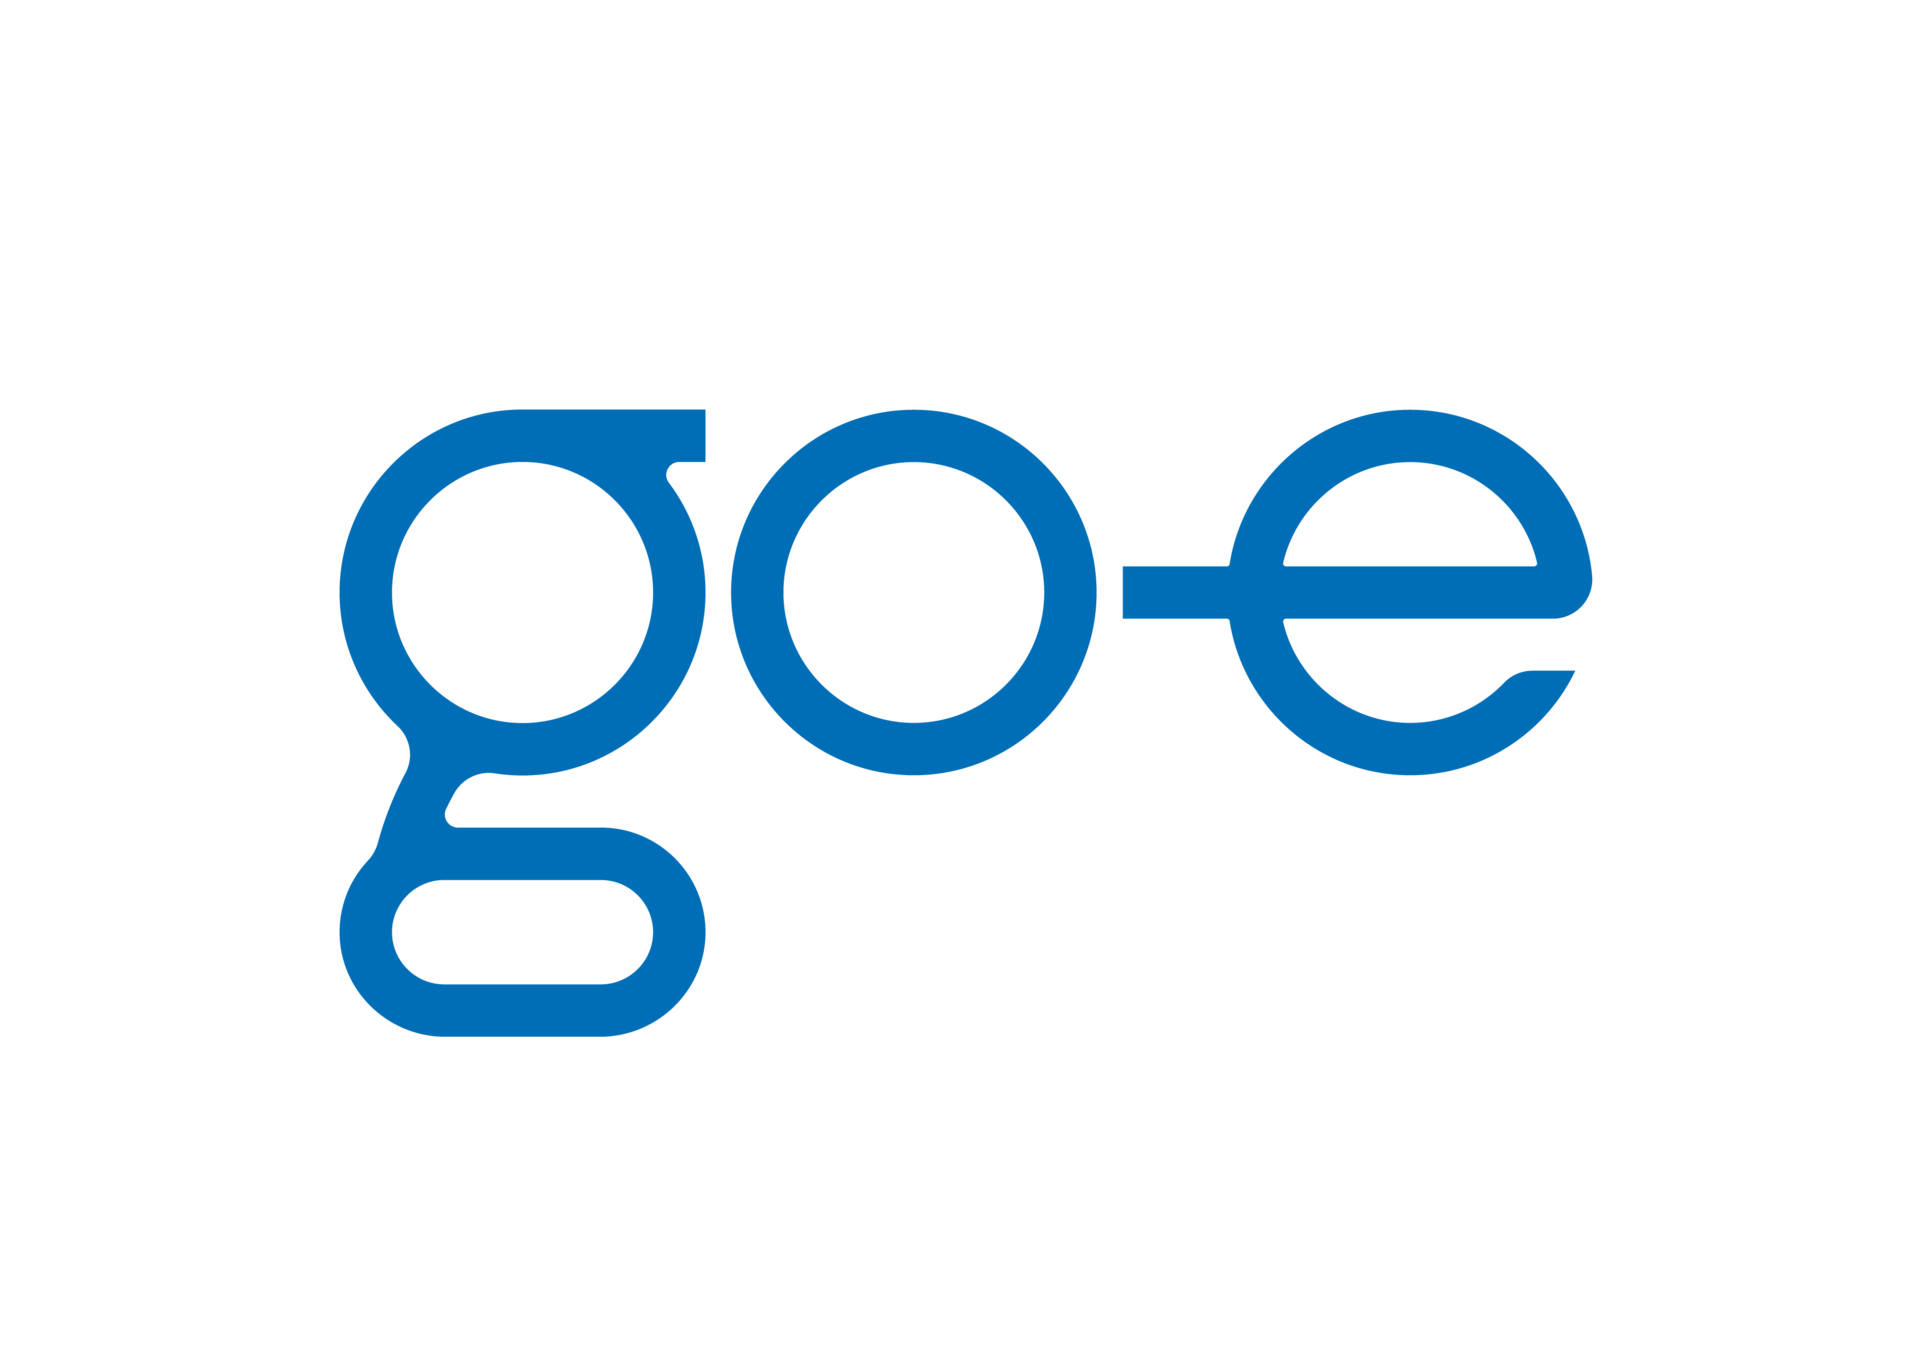 go-e Logo μπλε